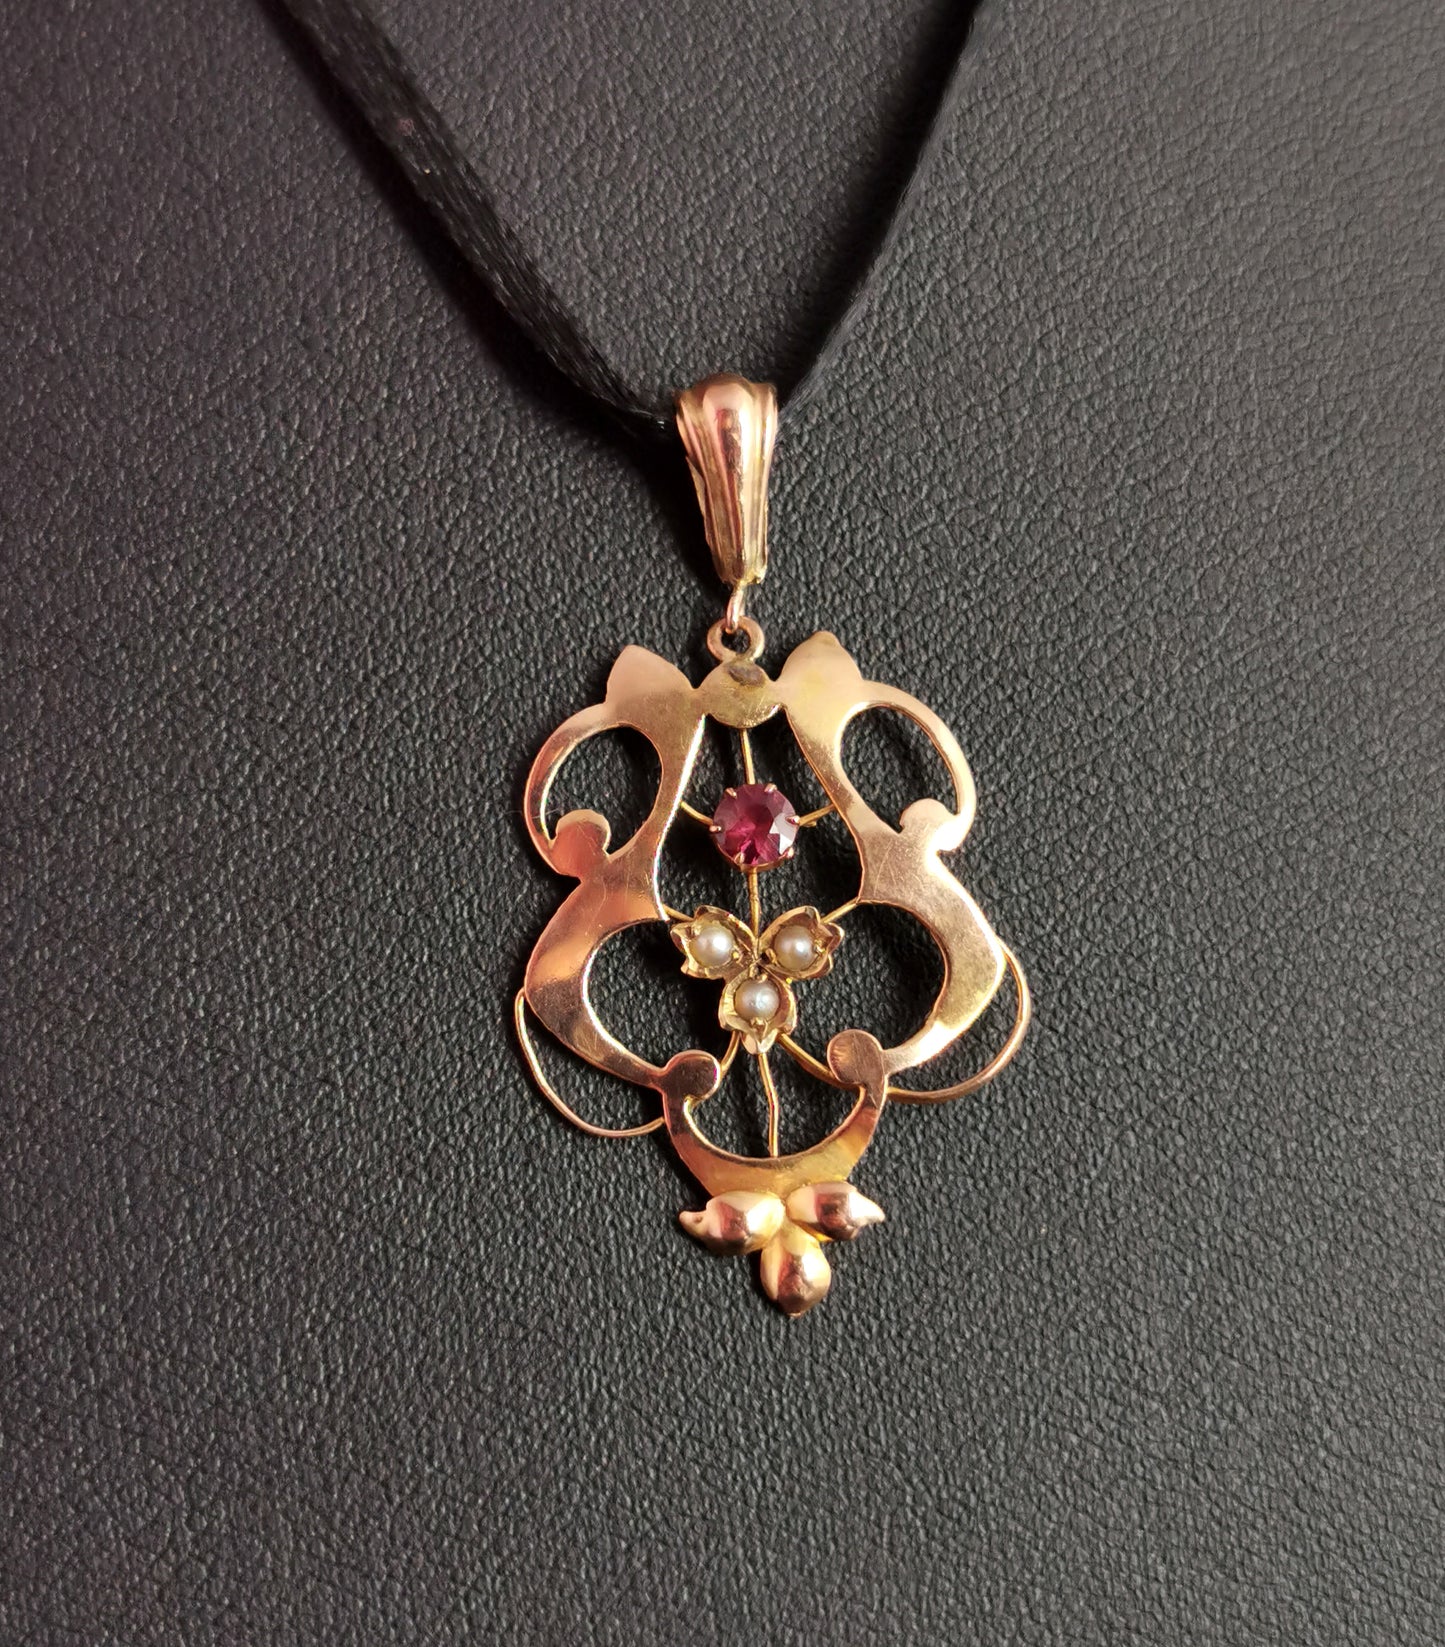 Antique Art Nouveau lavalier pendant, Ruby and pearl, 9ct gold